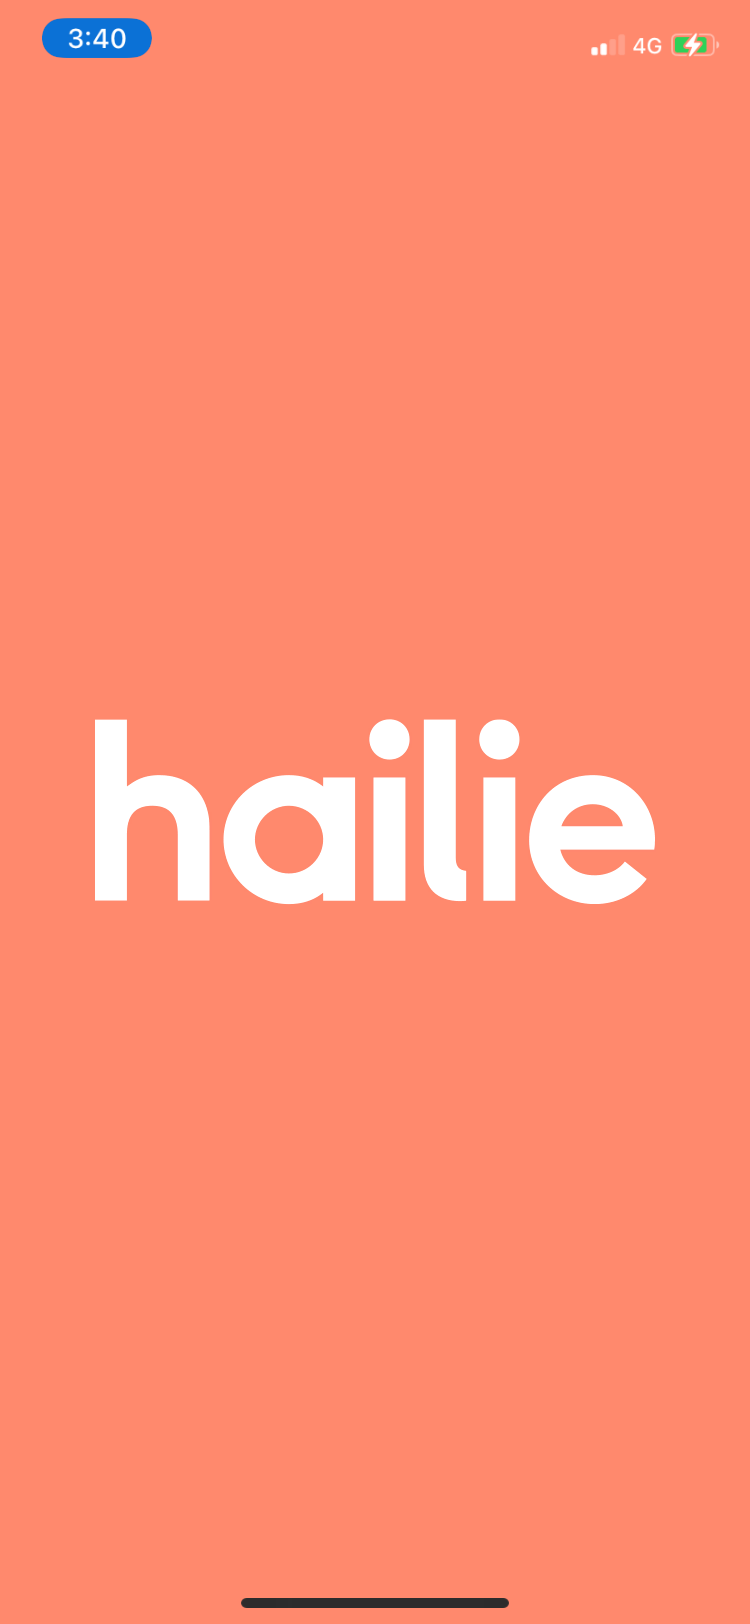 hailie startup oage